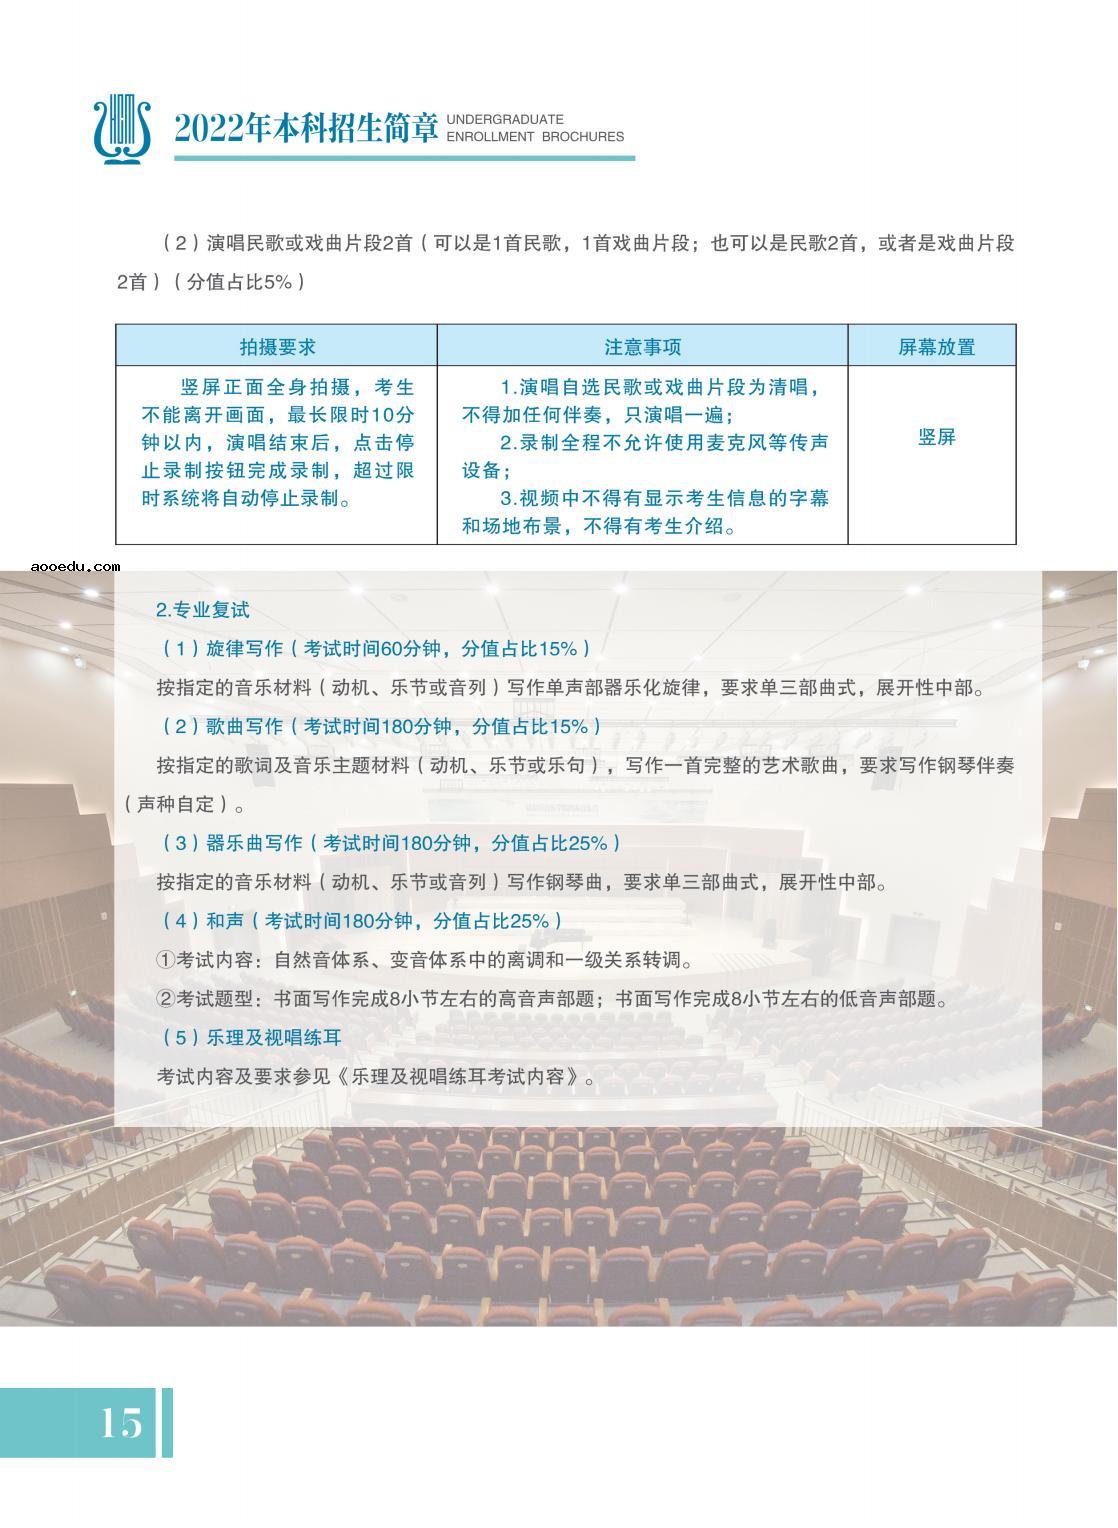 哈尔滨音乐学院2022年本科招生简章